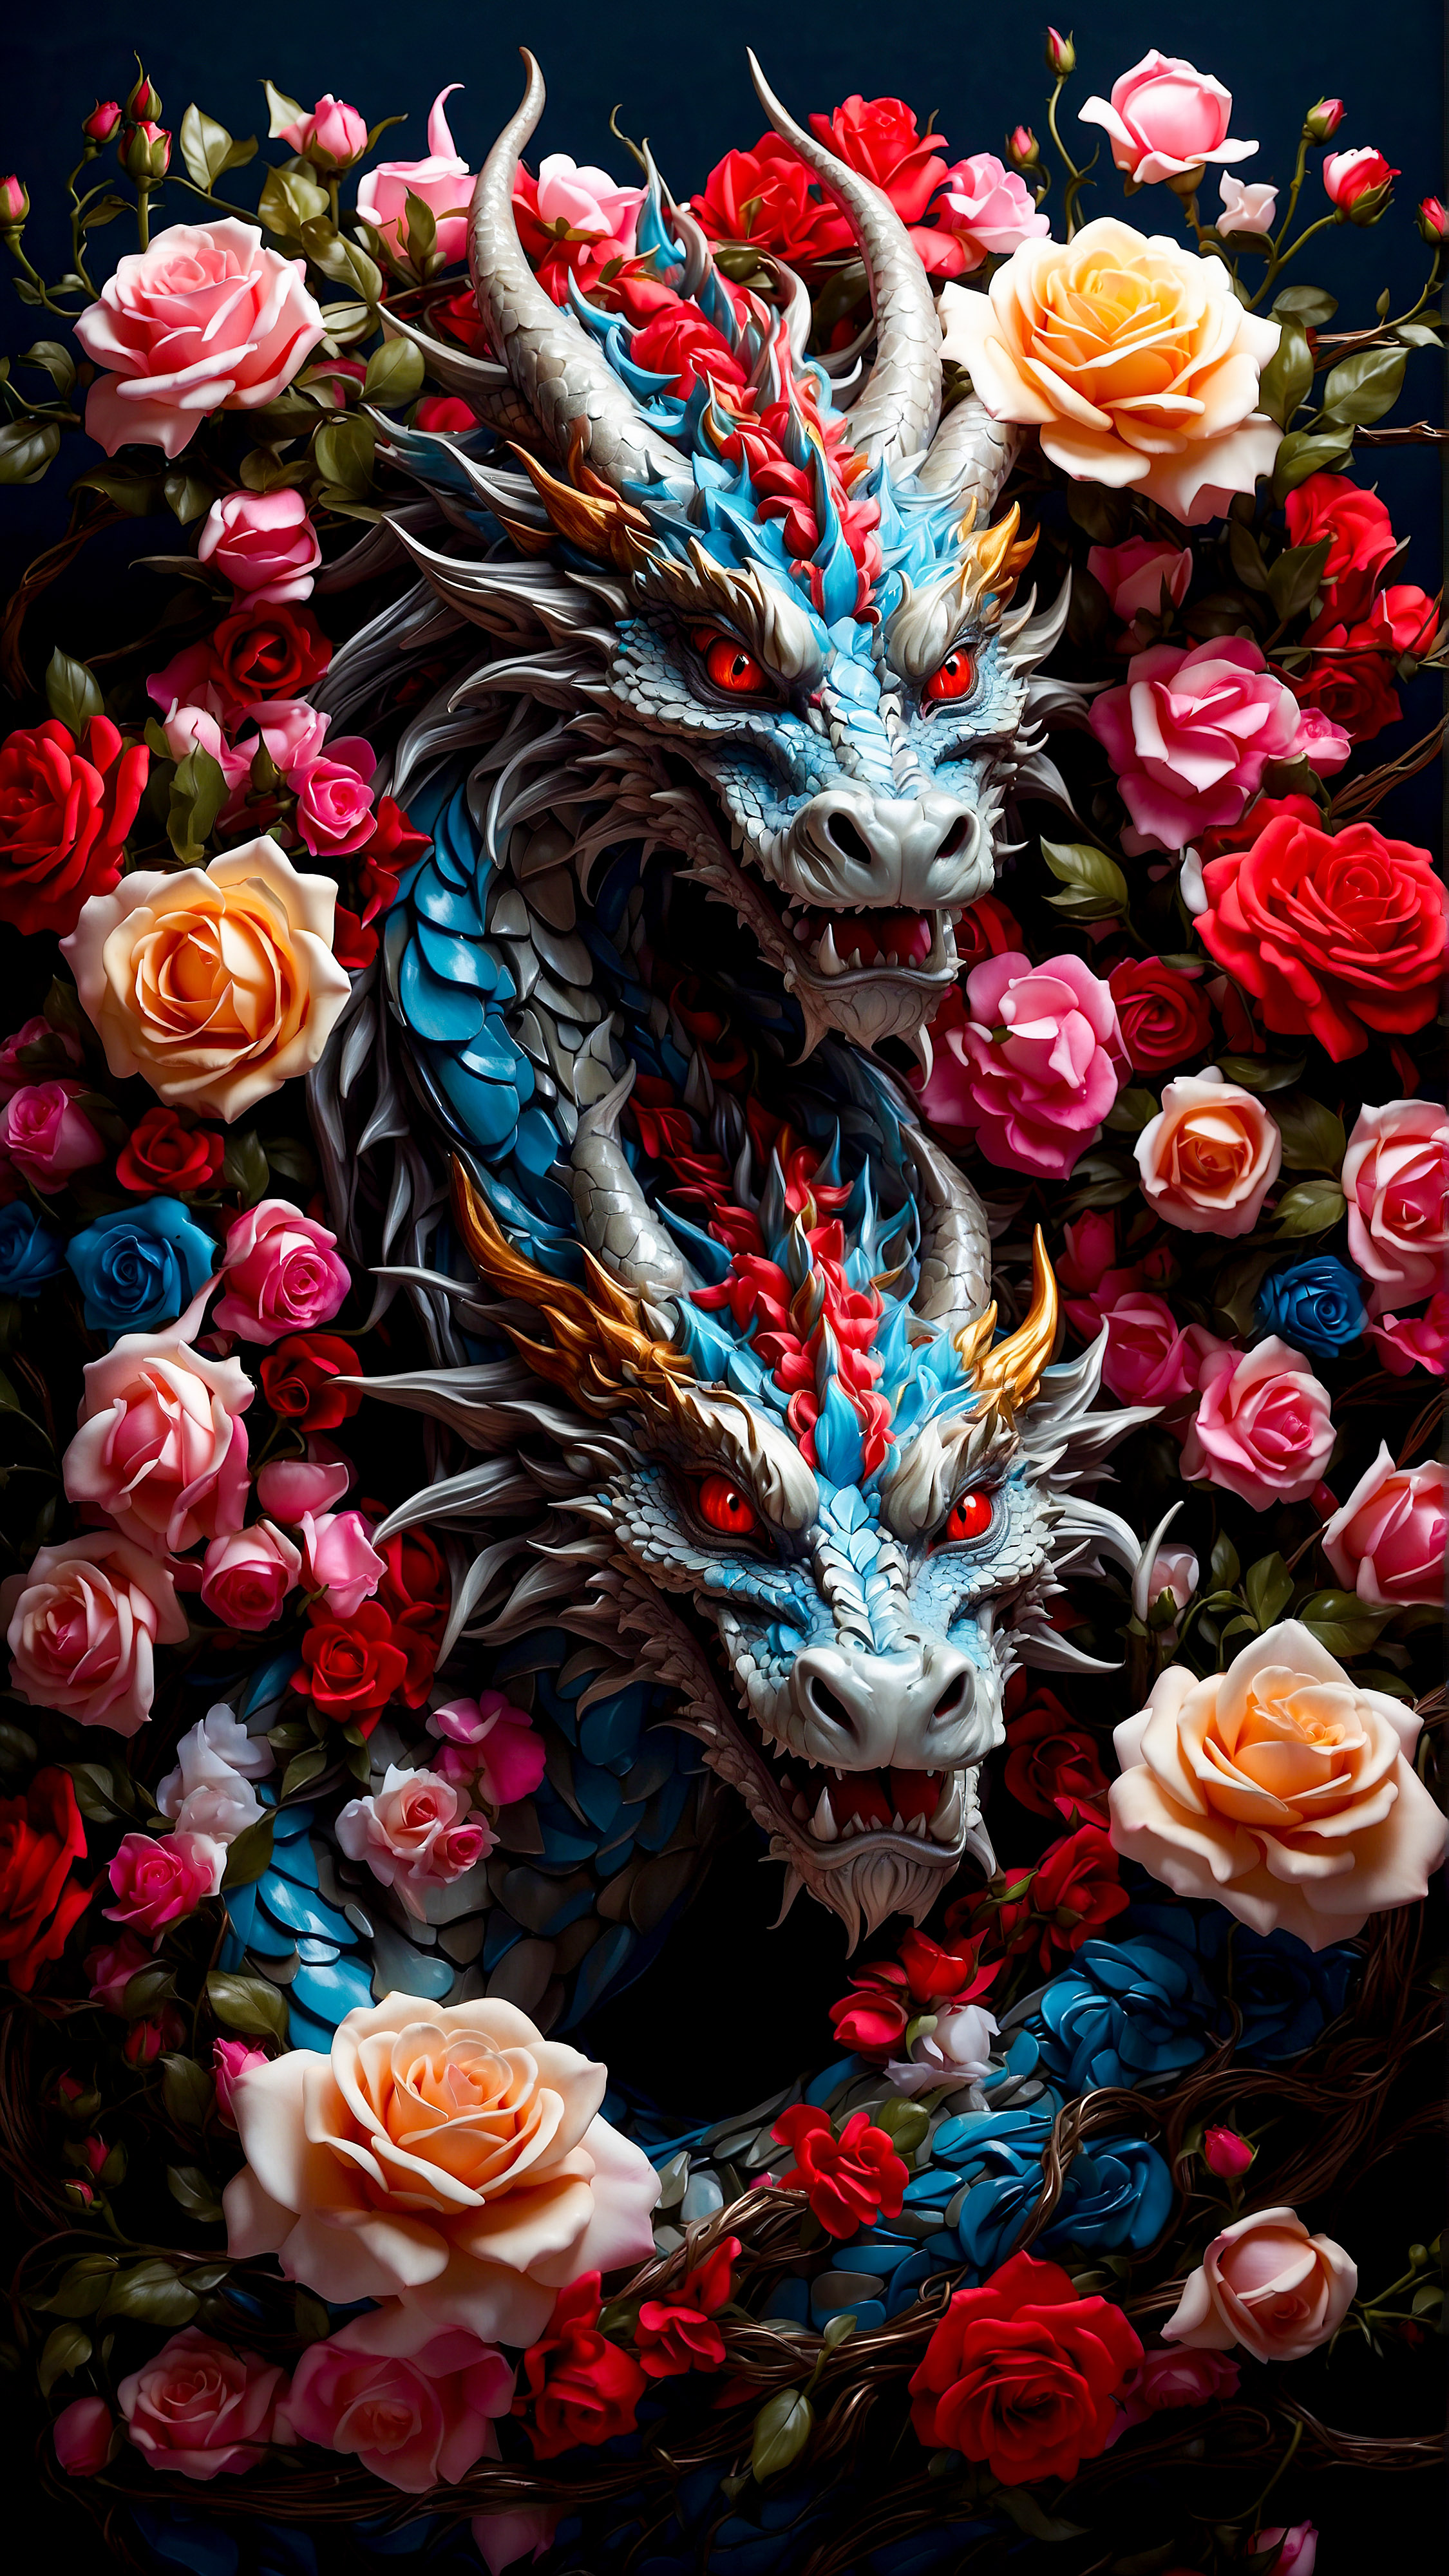 Ressentez la puissance de l'esthétique avec notre arrière-plan pour l'écran de verrouillage de l'iPhone, présentant une illustration vibrante et colorée d'un dragon entrelacé avec de belles roses sur un fond sombre. 